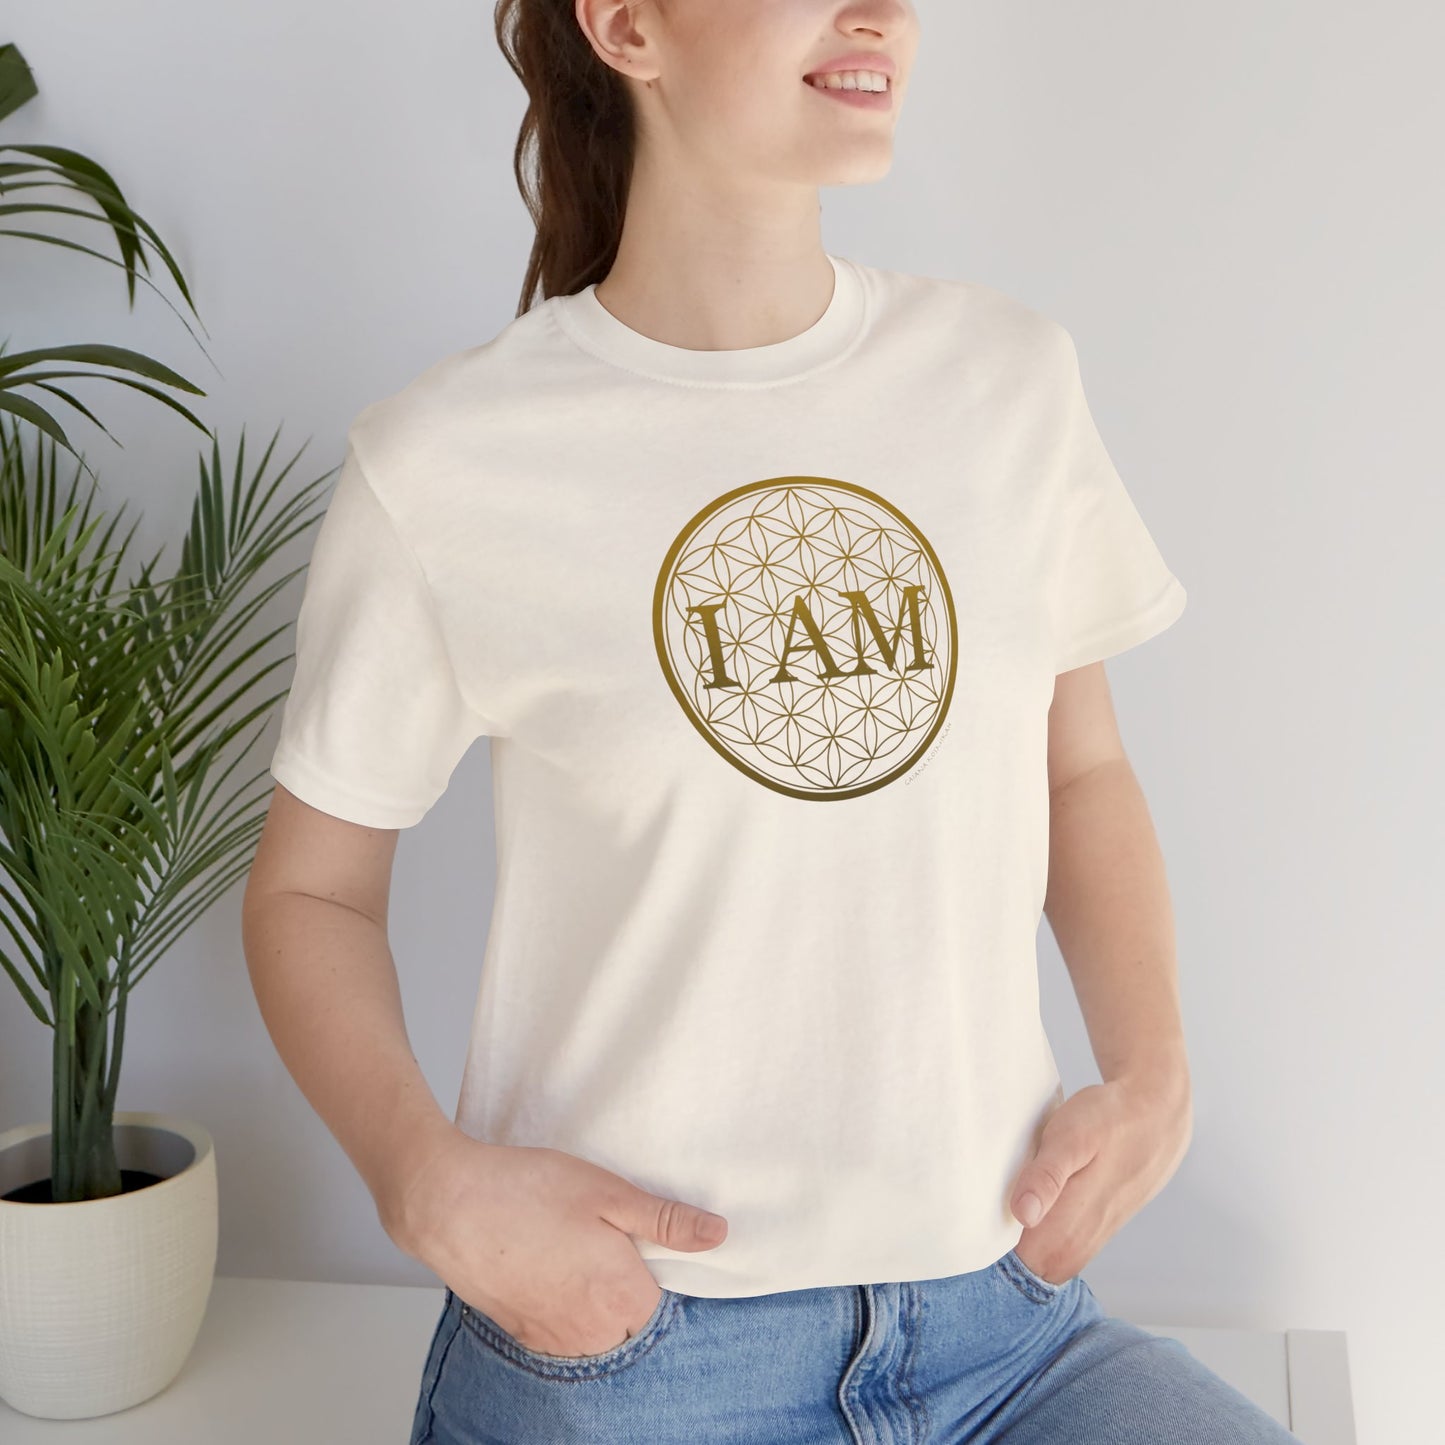 I Am Flower of Life Unisex Jersey Short Sleeve Tee | I Am Flower of Life Spiritual Shirt | I Am Flower of Life Yoga T-Shirt